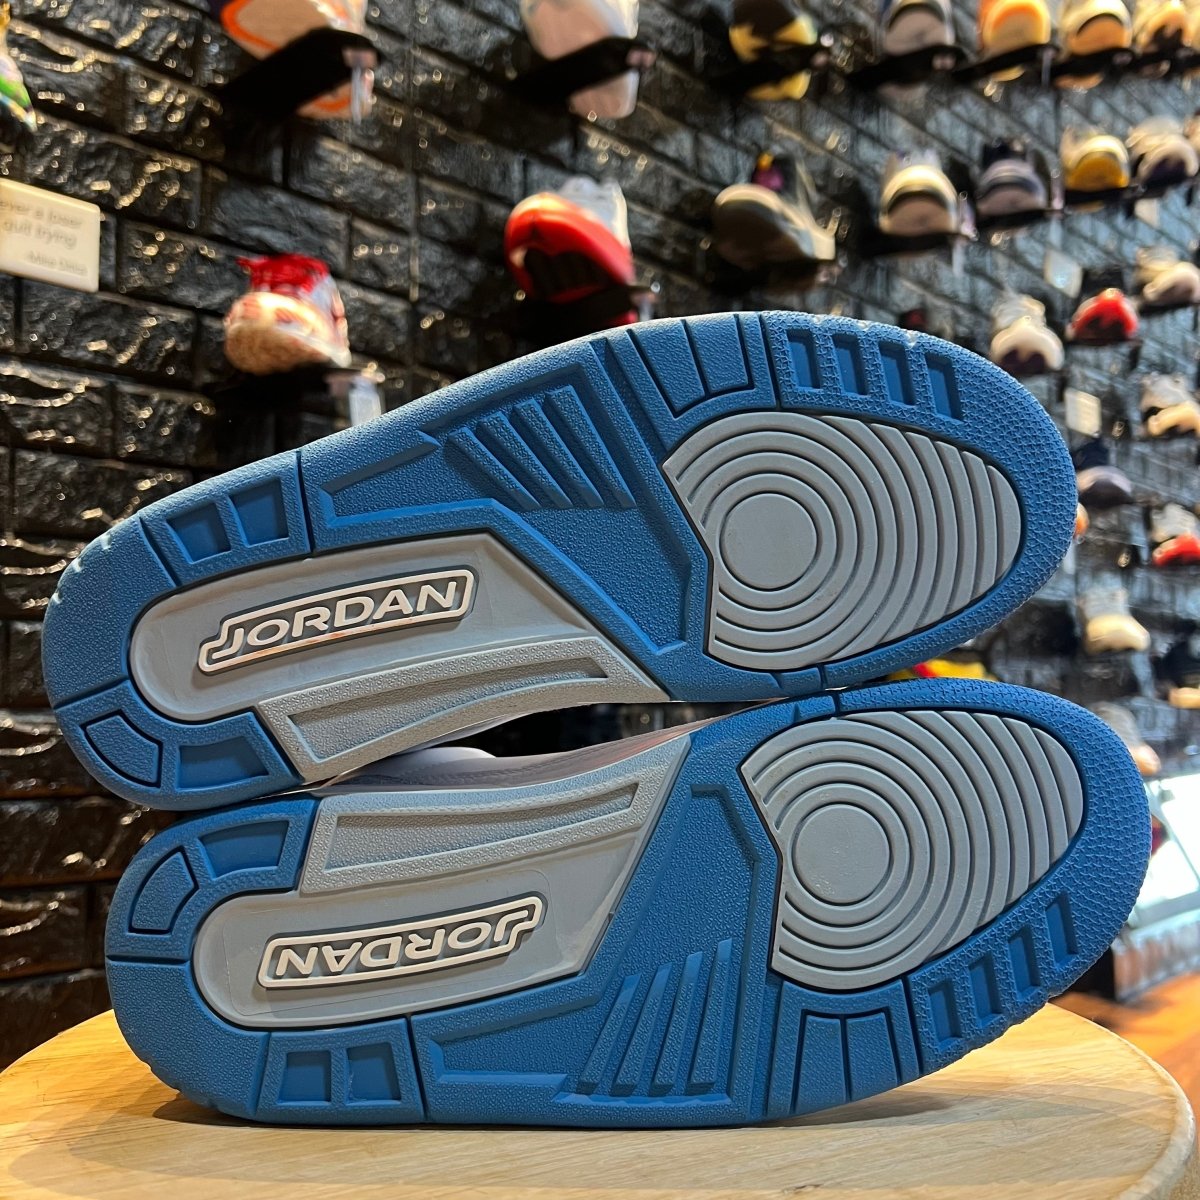 Jordan 3 Retro Harbor Blue - Gently Enjoyed (Used) Women 11 - Mid Sneaker - Jawns on Fire Sneakers & Streetwear